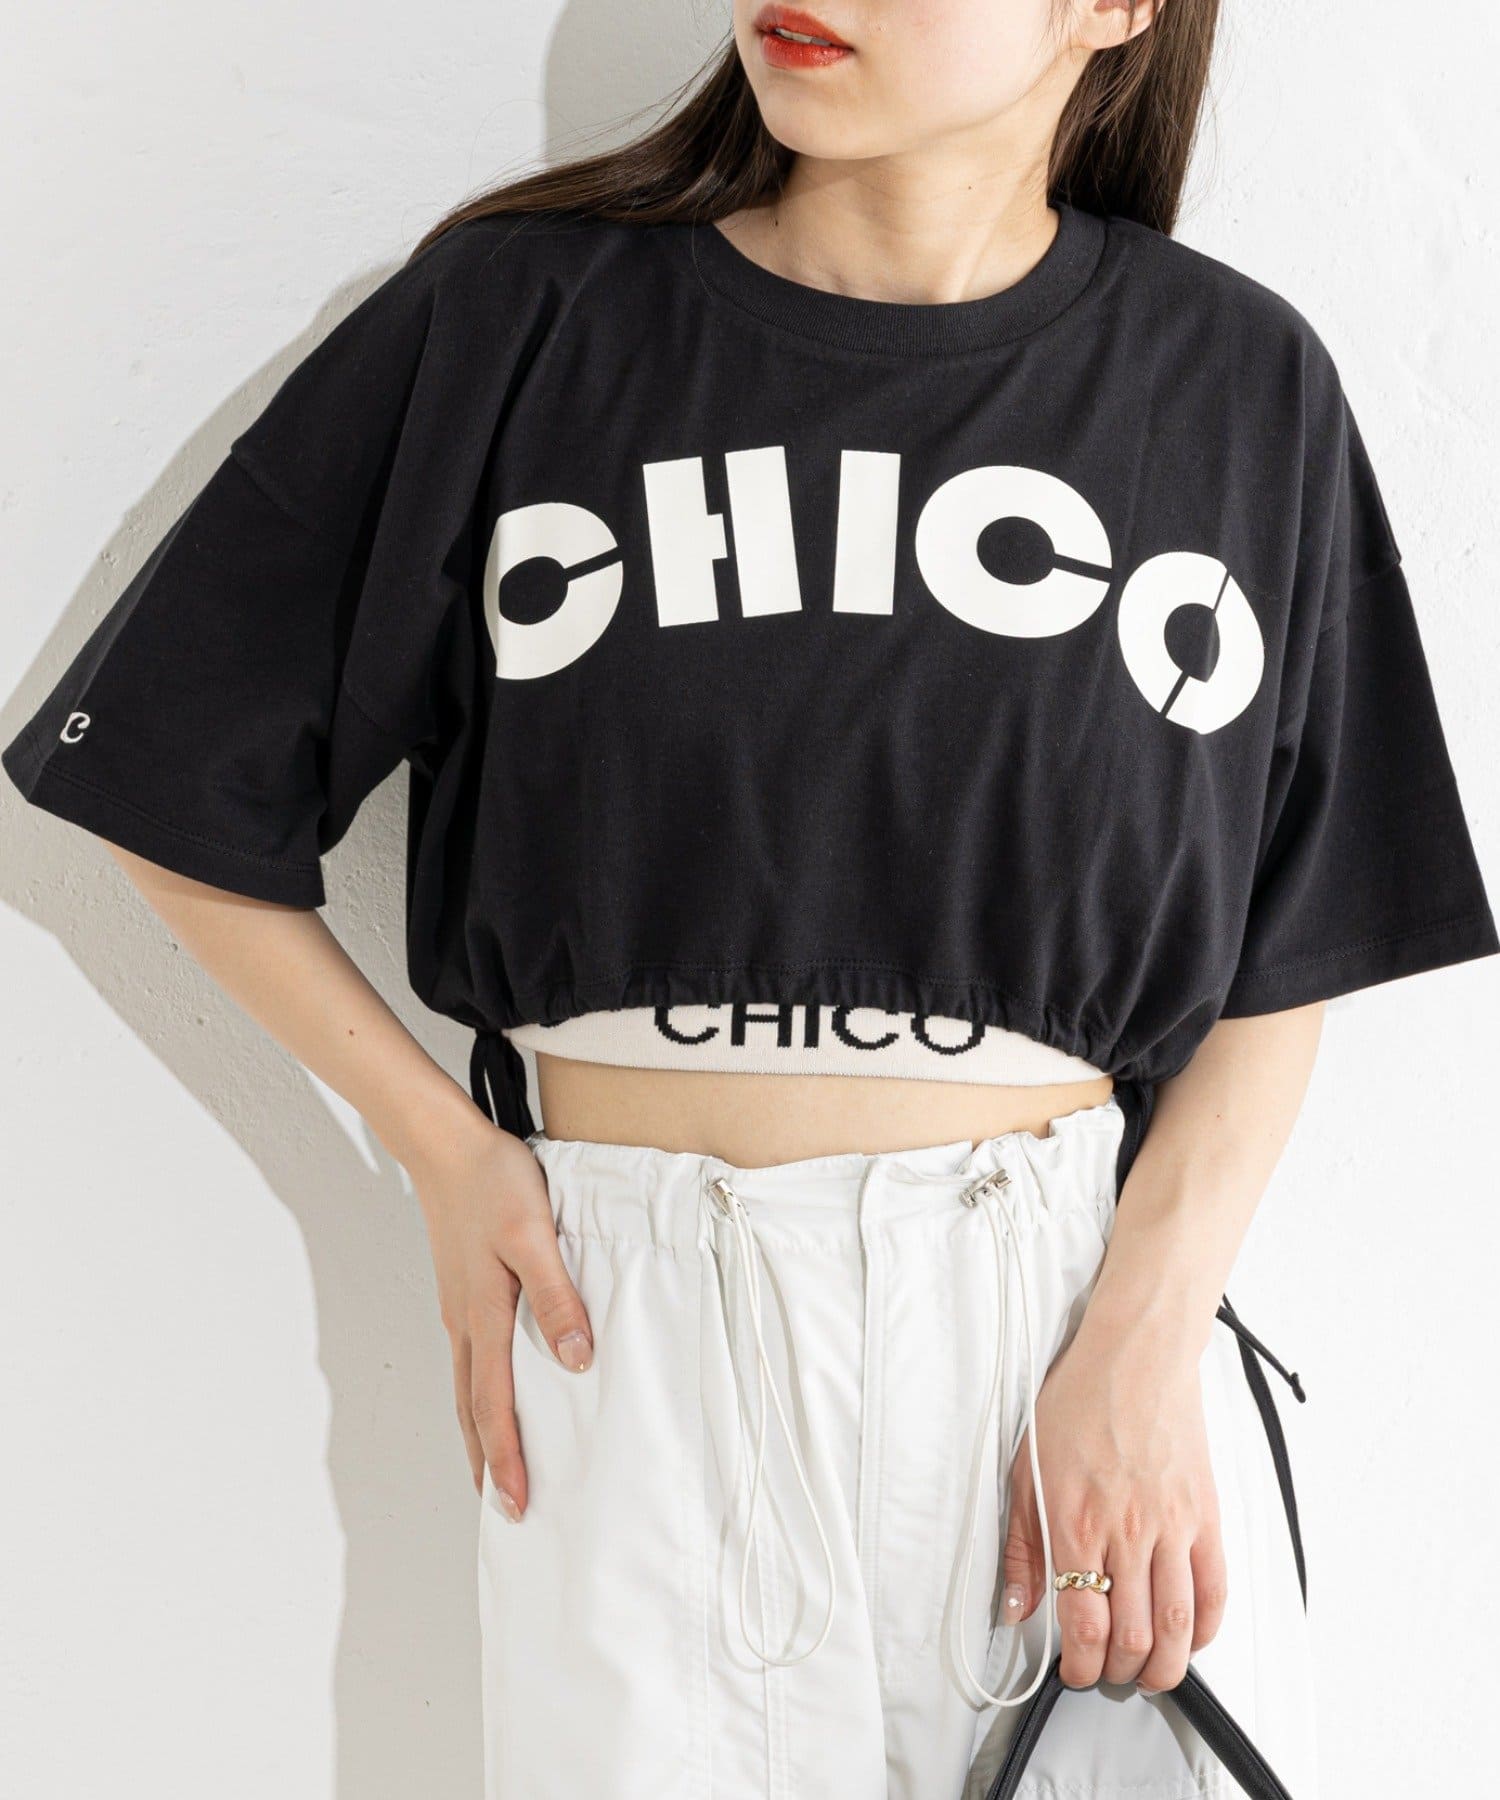 Chico(チコ) クロップドサイドリボンロゴTシャツ